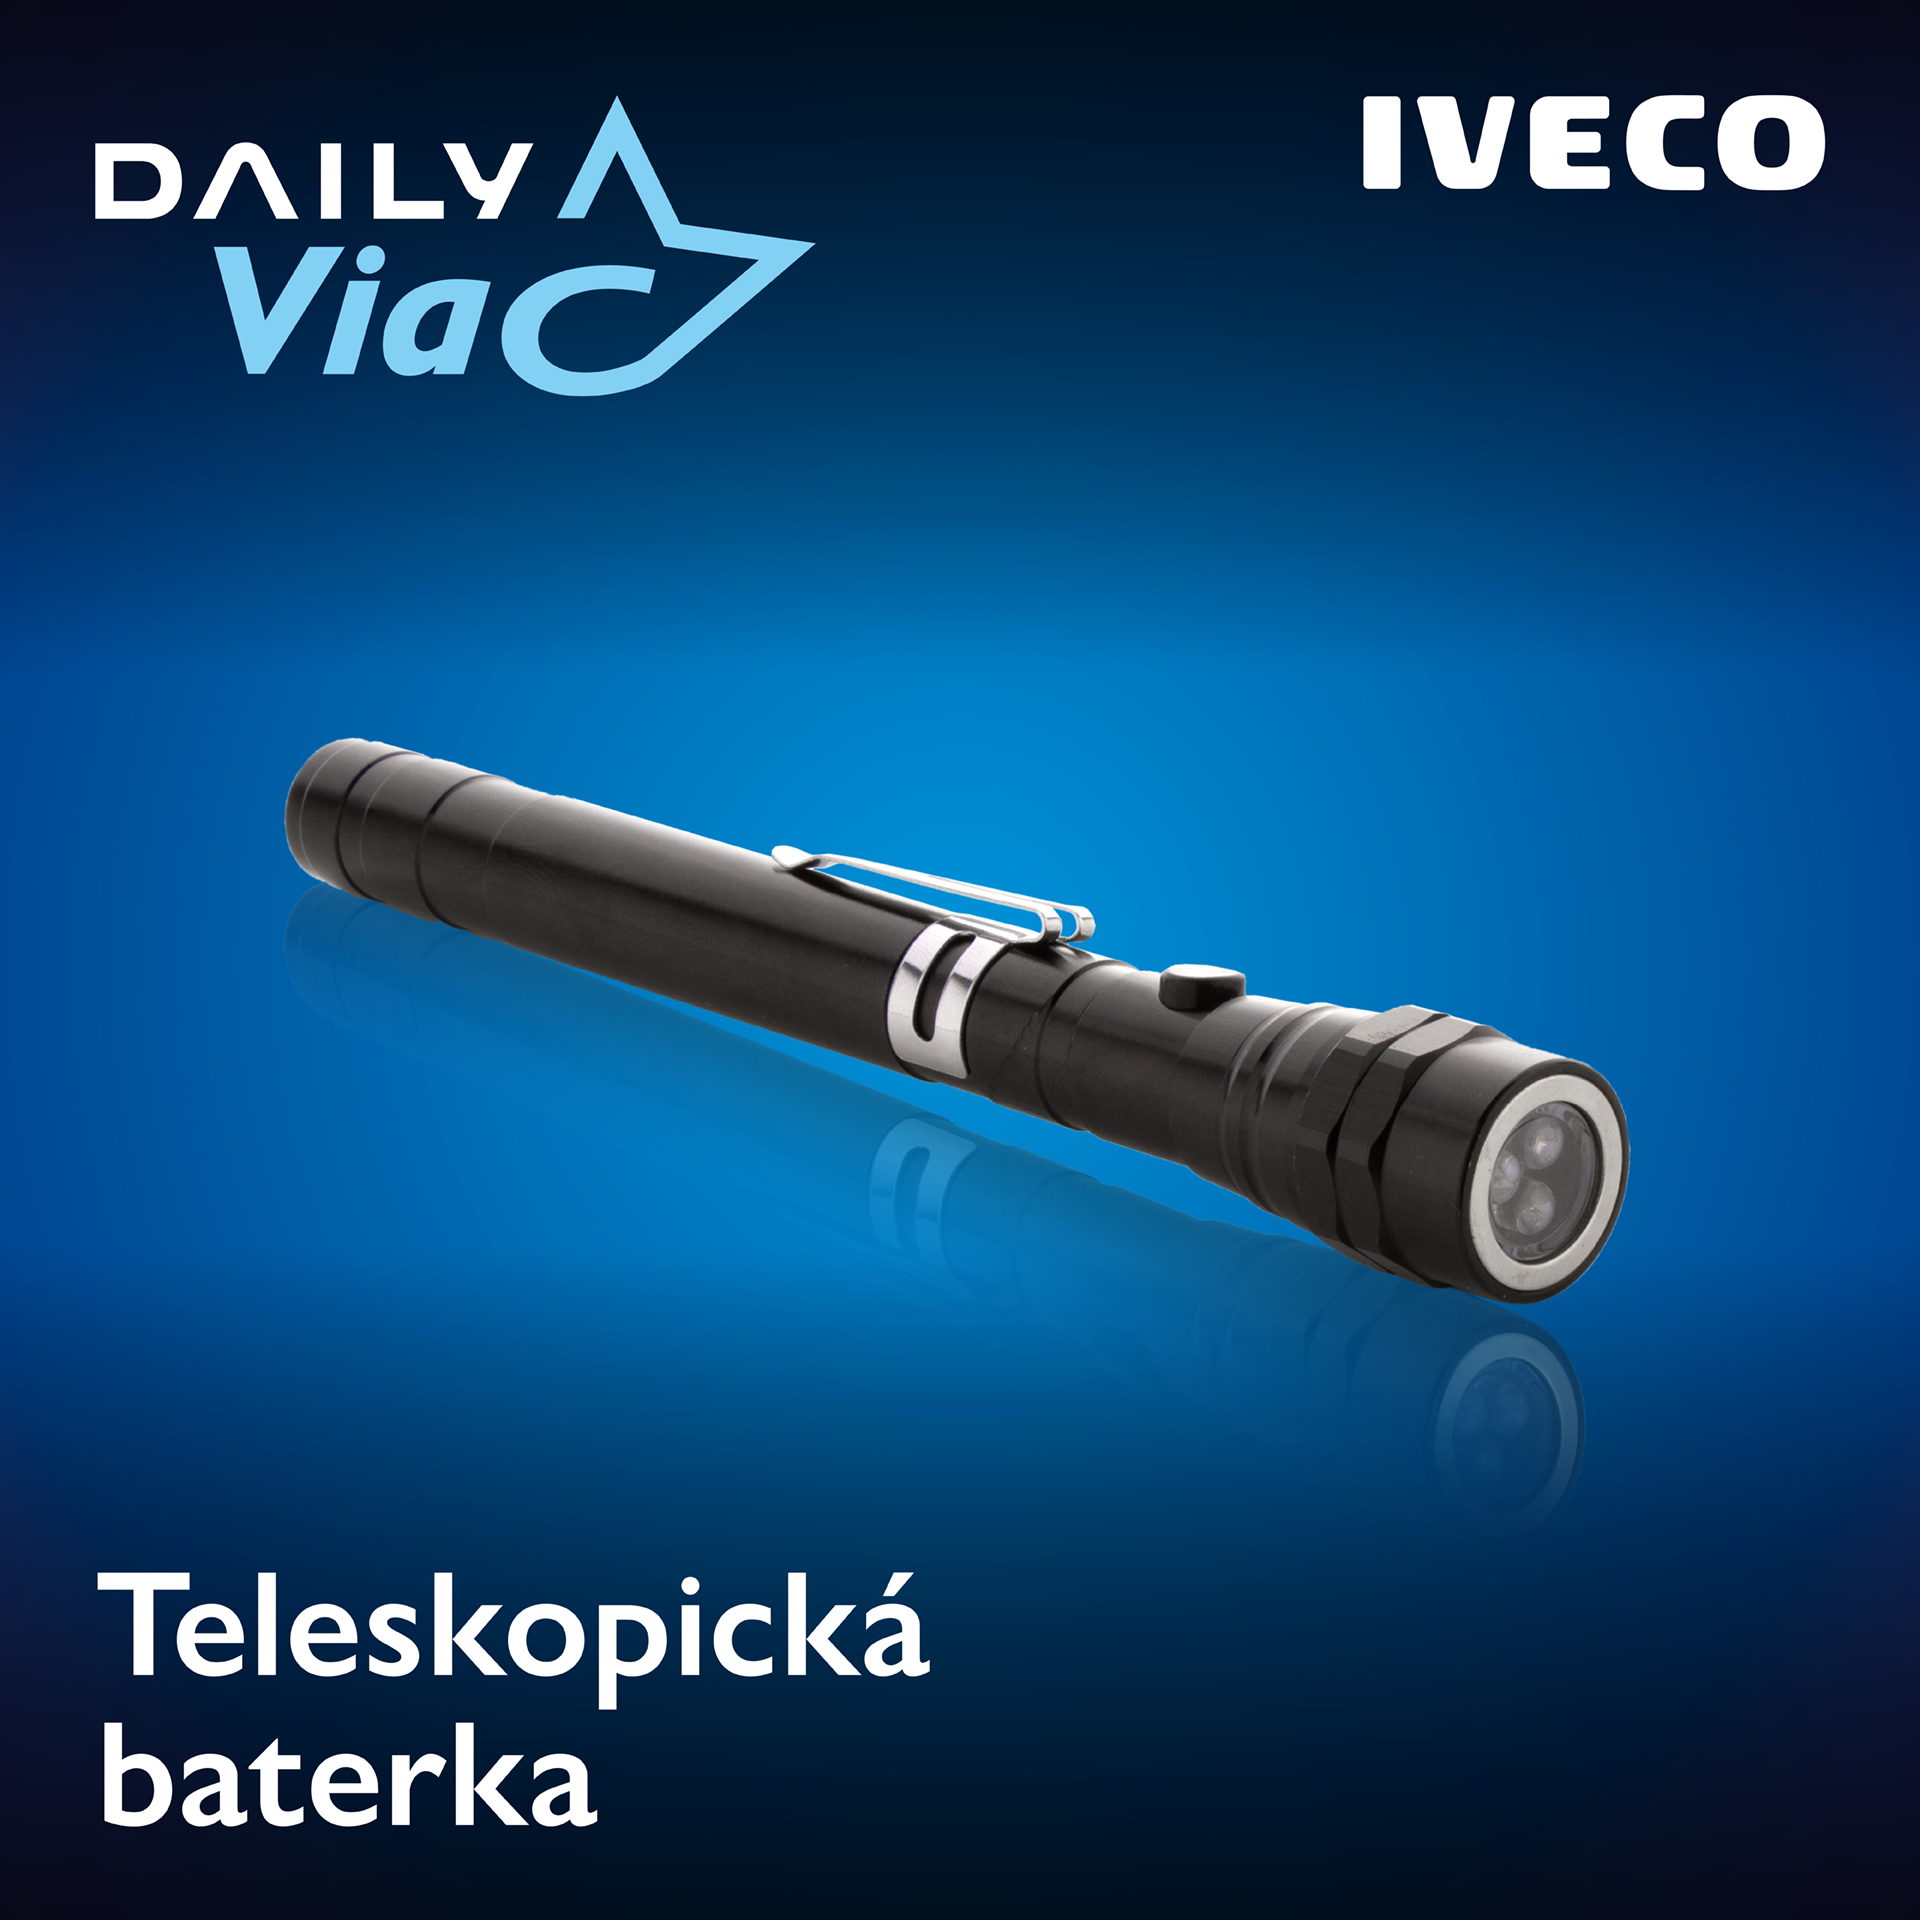 Iveco Daily Viac - darček baterka